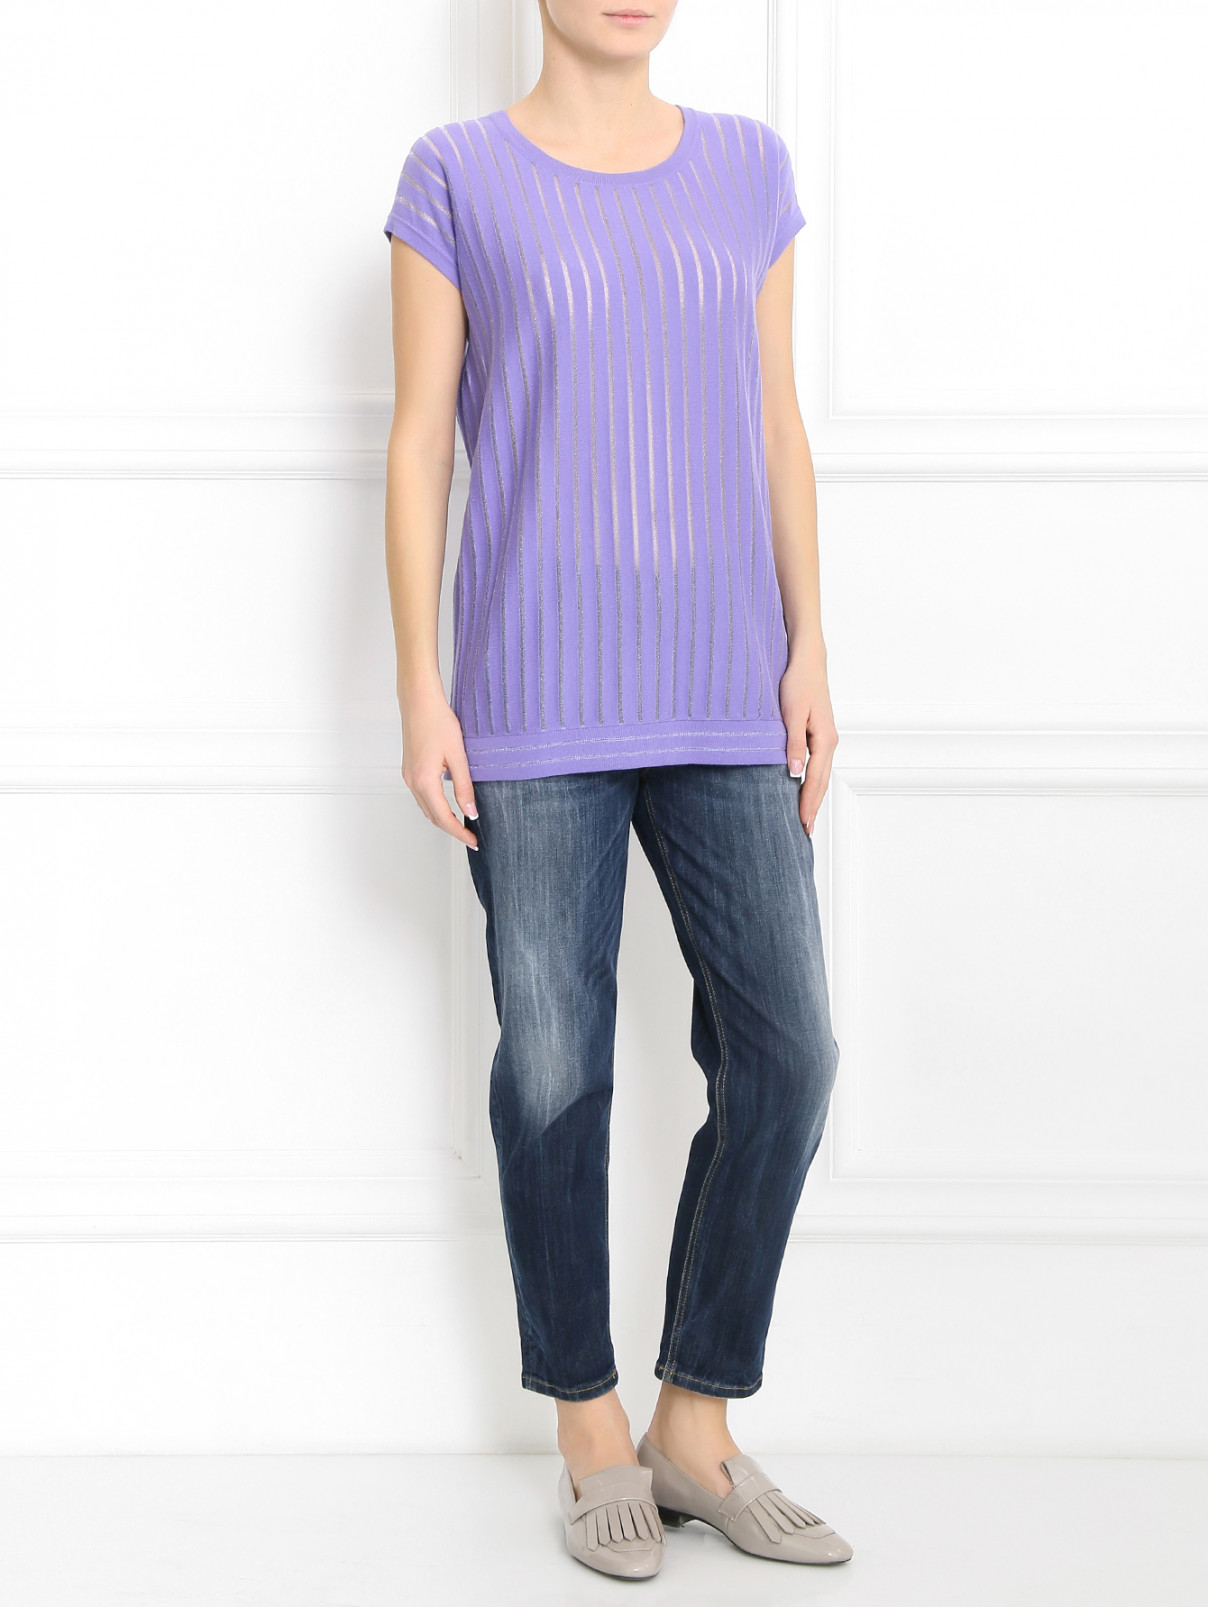 Джемпер из хлопка с узором "полоска" Armani Jeans  –  Модель Общий вид  – Цвет:  Фиолетовый